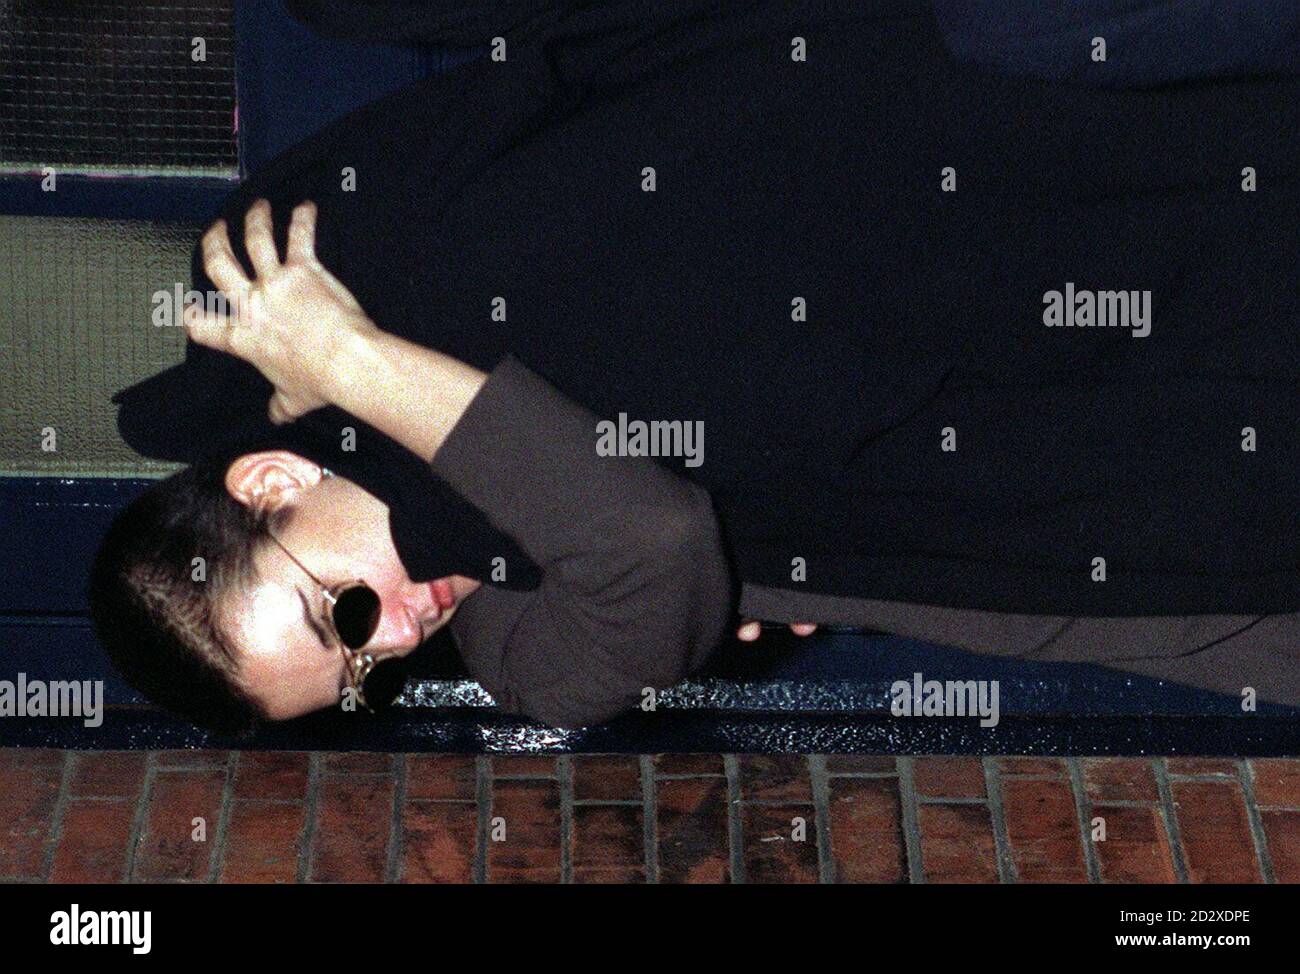 Die Hollywood-Schauspielerin Demi Moore bedeckt ihr Kind mit einem Mantel, als sie aus der Hintertür des Londoner Palladium auftauchte, nachdem sie die Matinee-Aufführung von 'Oliver!' gesehen hatte. Heute (Mi). Foto von John Stillwell/PA. Stockfoto